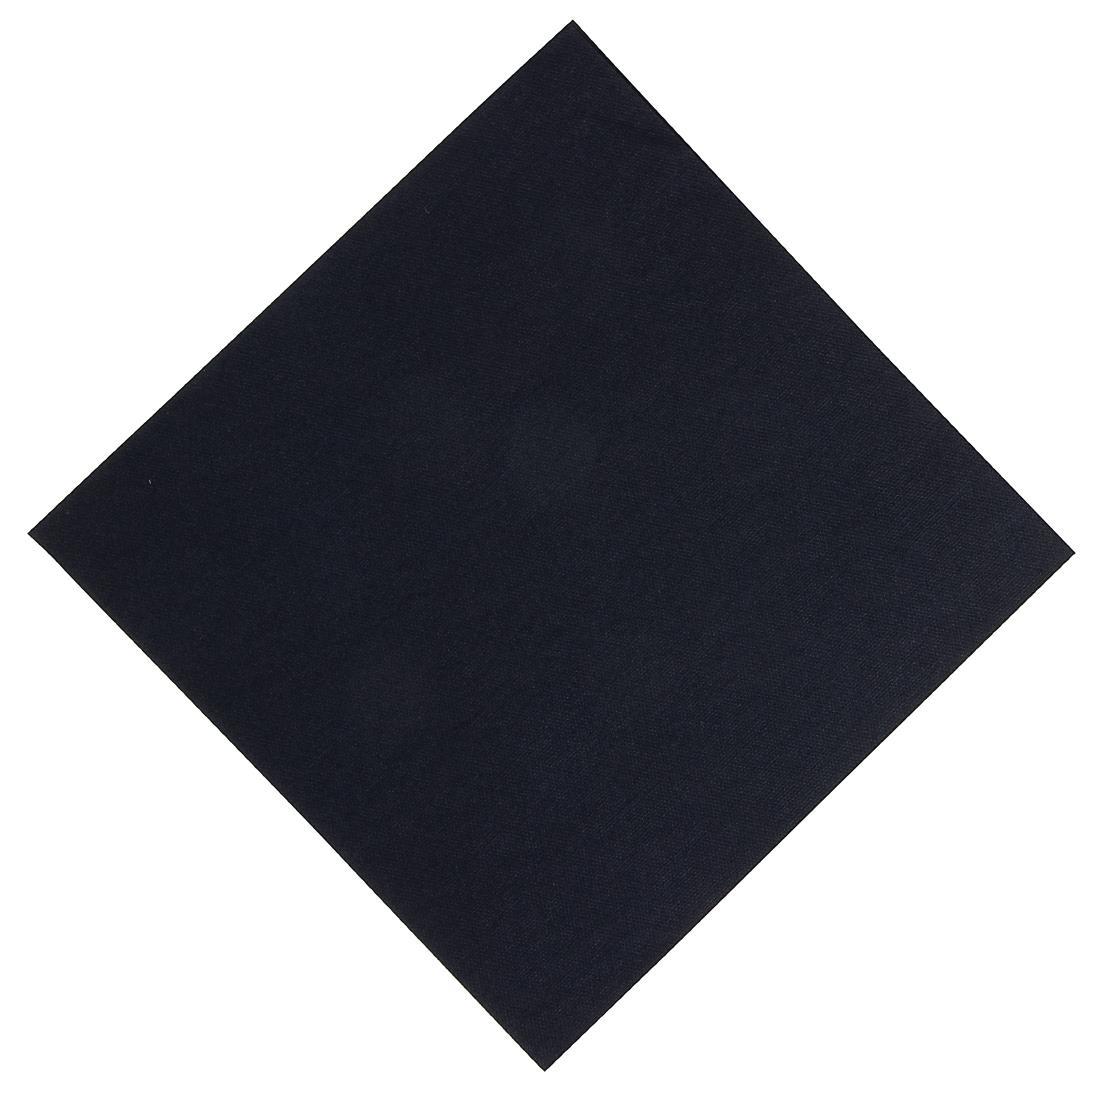 Duni Dinner Napkin Black 40x40cm 1ply 1/8 Fold (Pack of 720) - GJ120  - 1